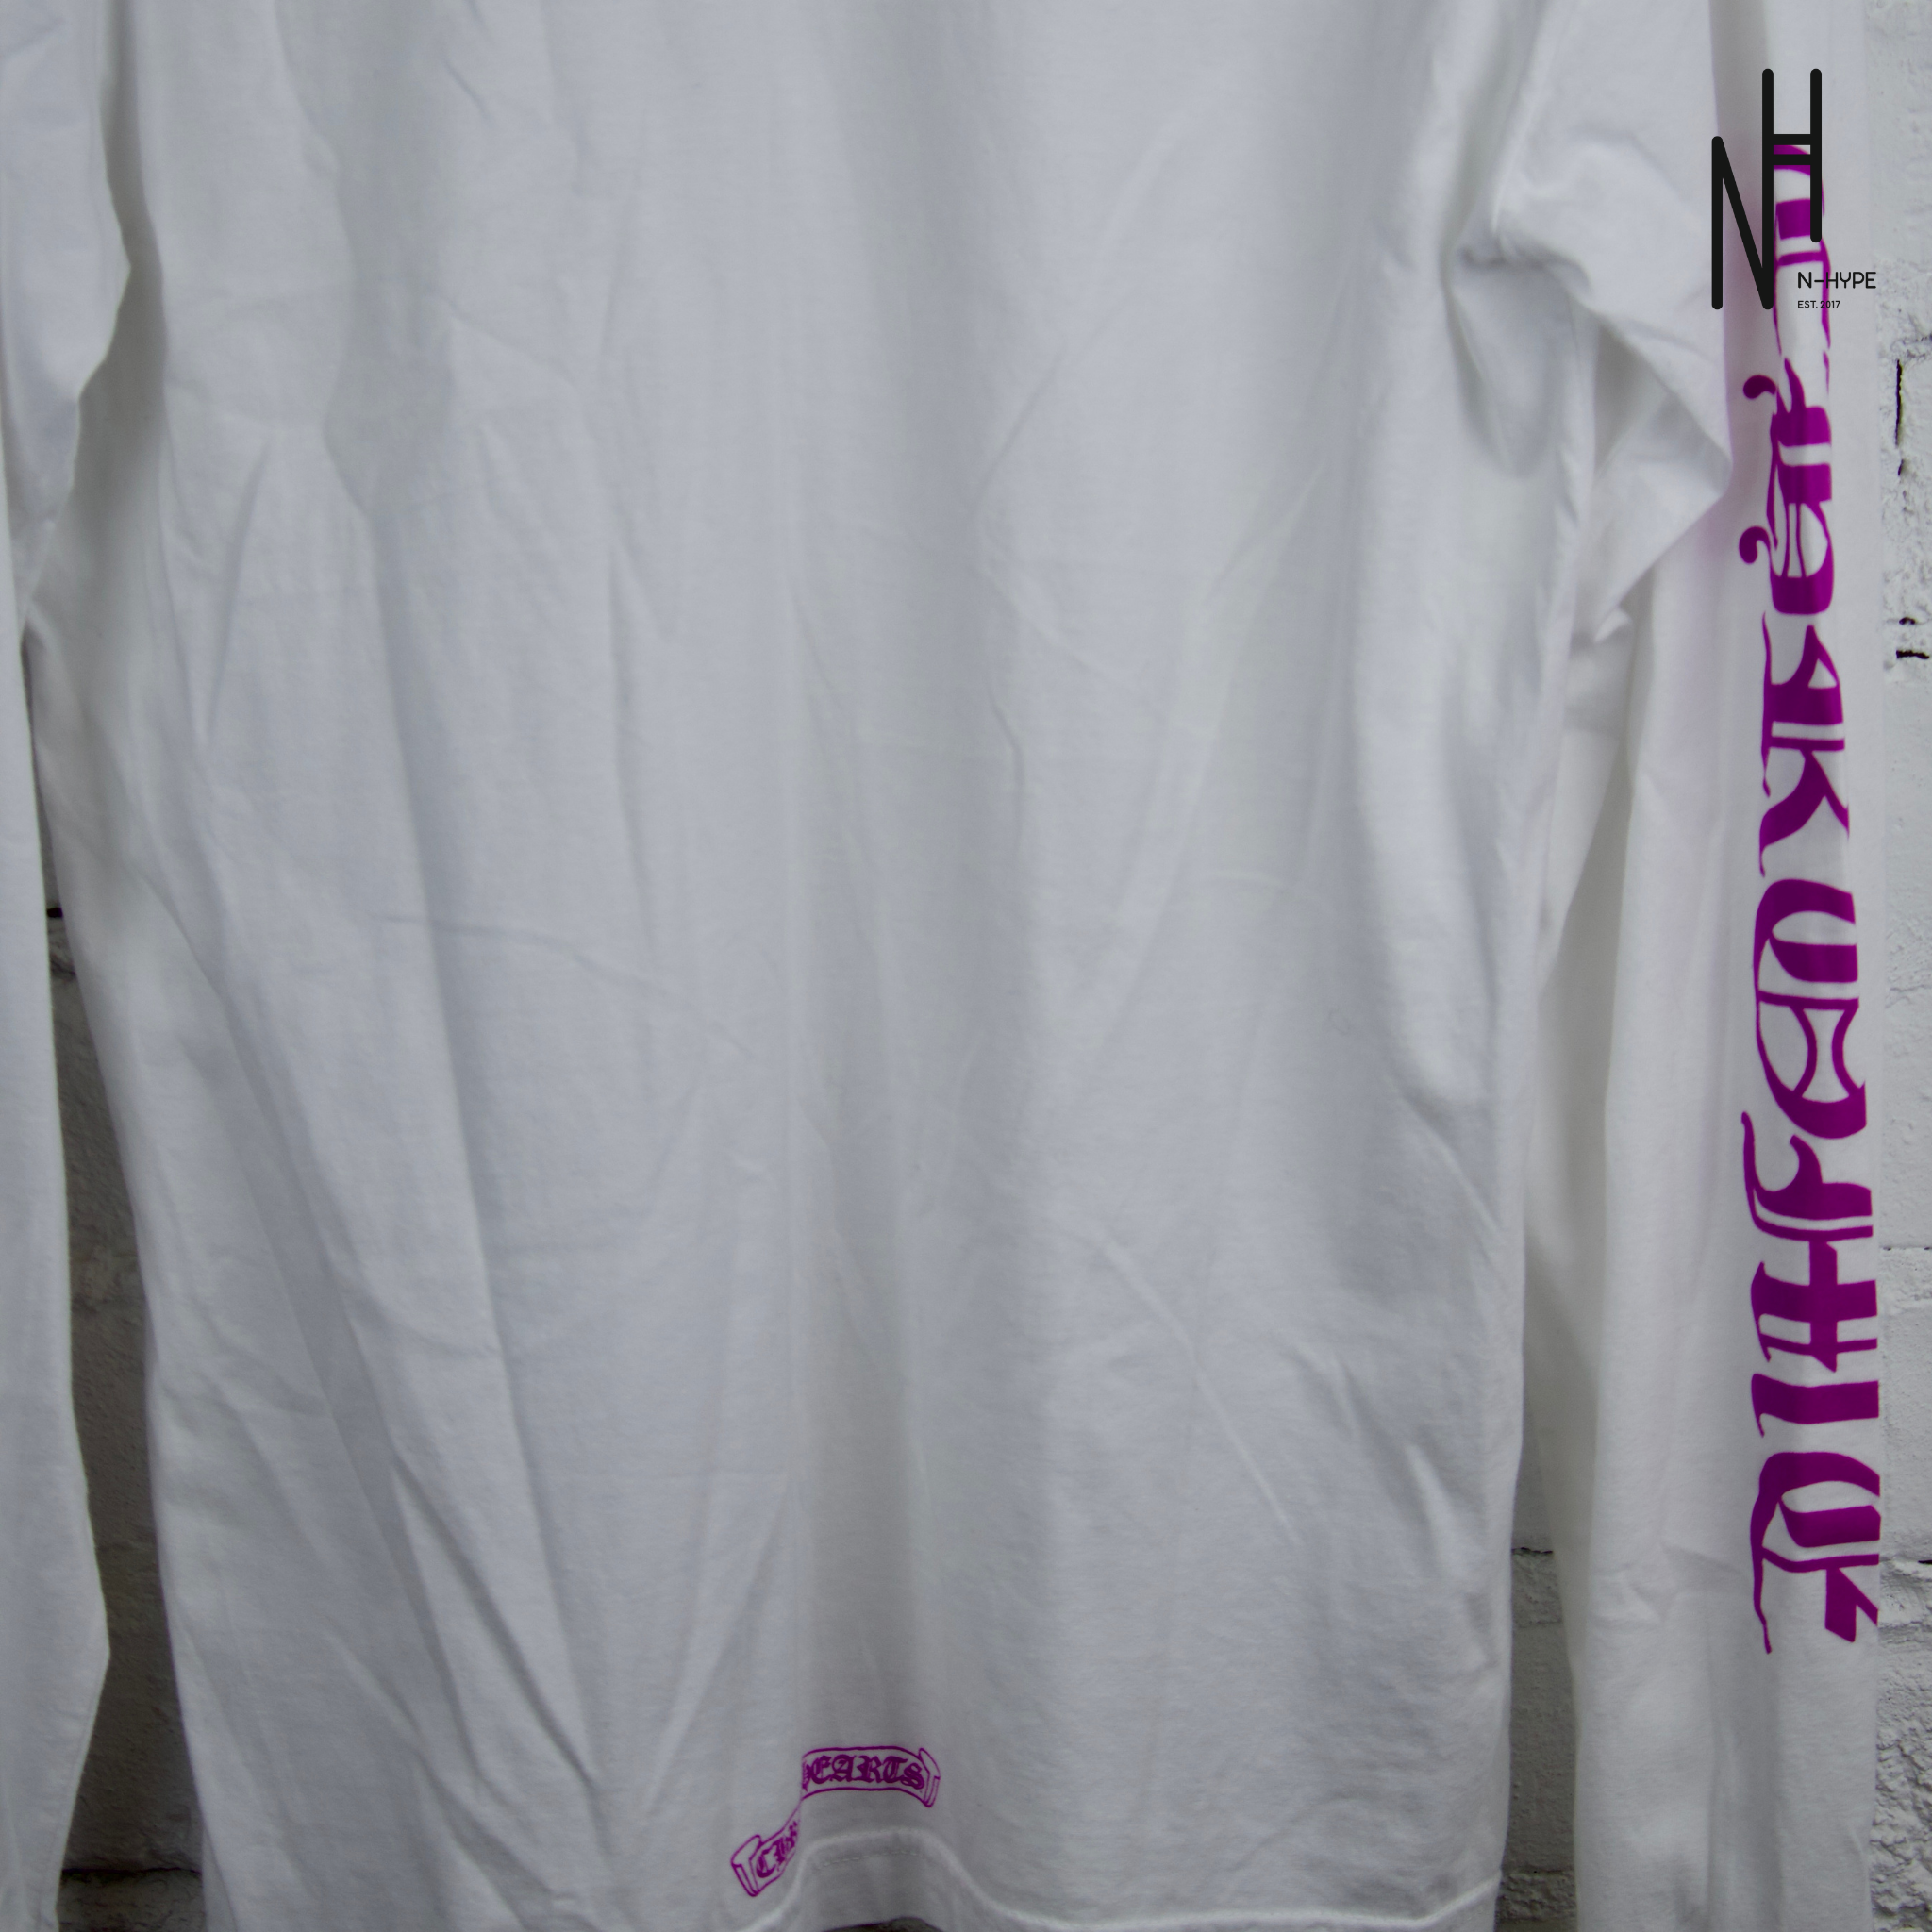 Chrome Hearts Purple Neck Letter White Longsleeve Tshirt Showroom NHype Lodz Polska 3